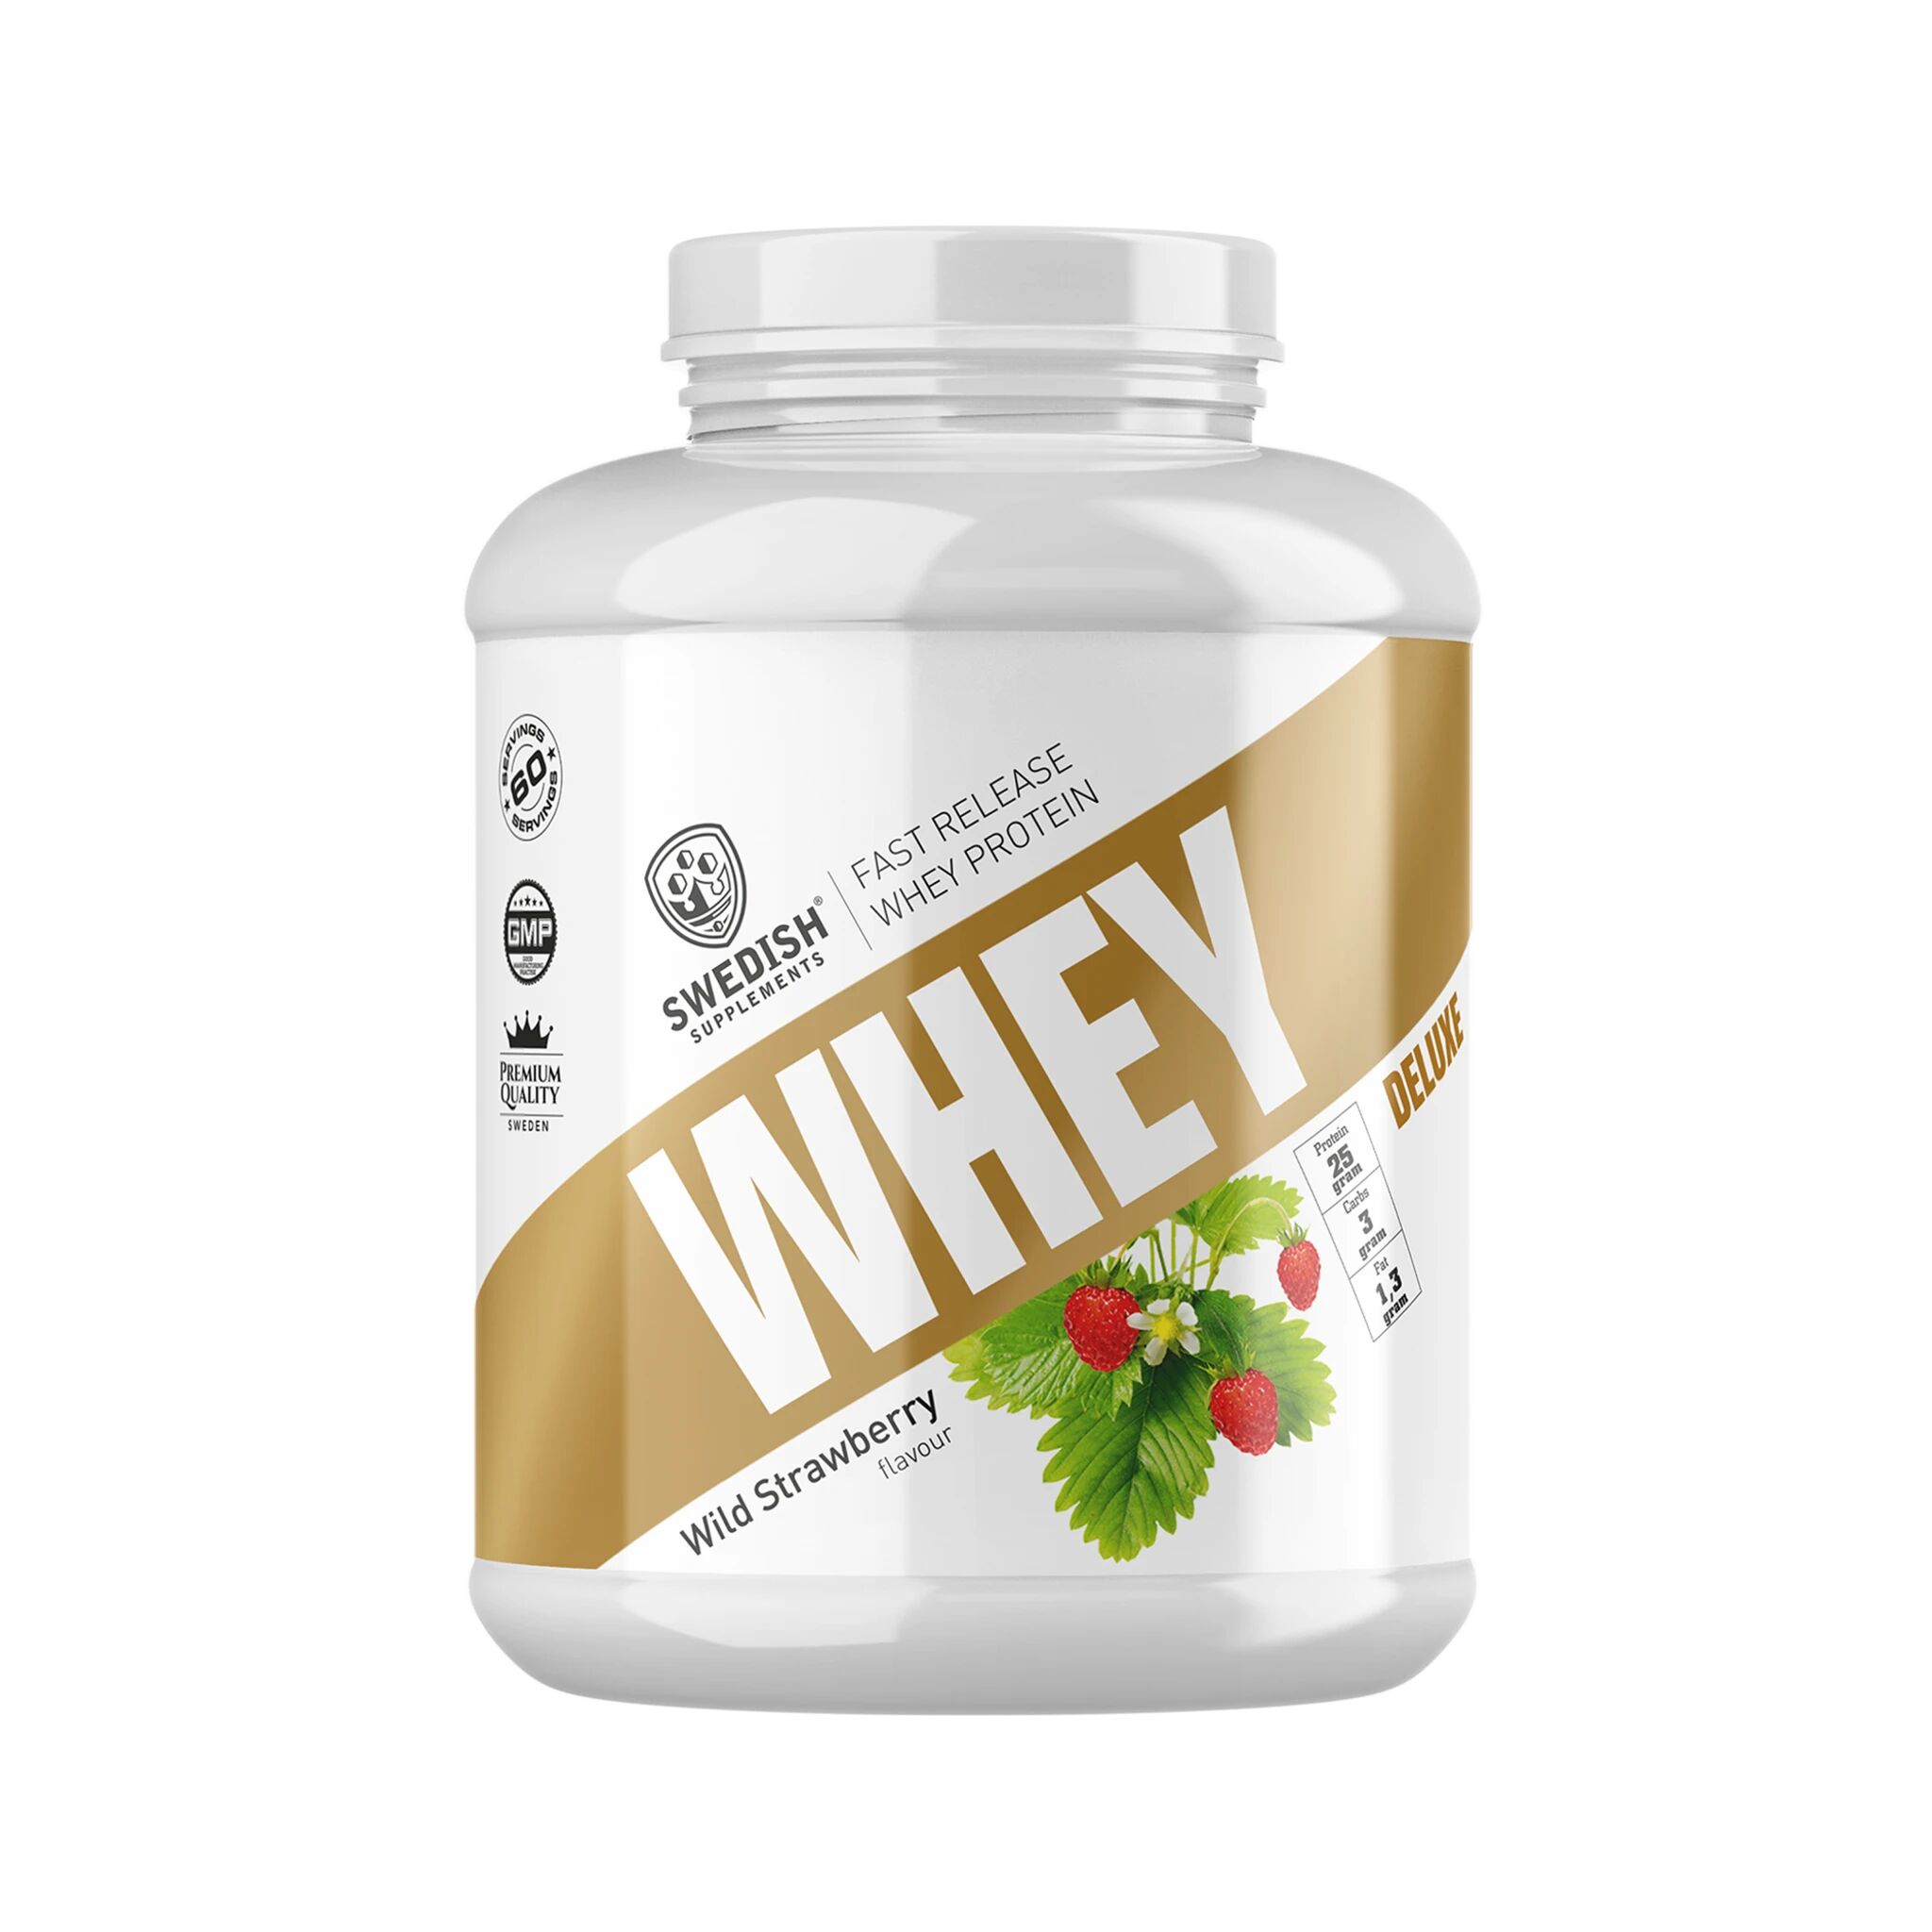 Swedish Supplements Whey Protein Deluxe 1 kg, proteinpulver 1000g Wild Strawberry